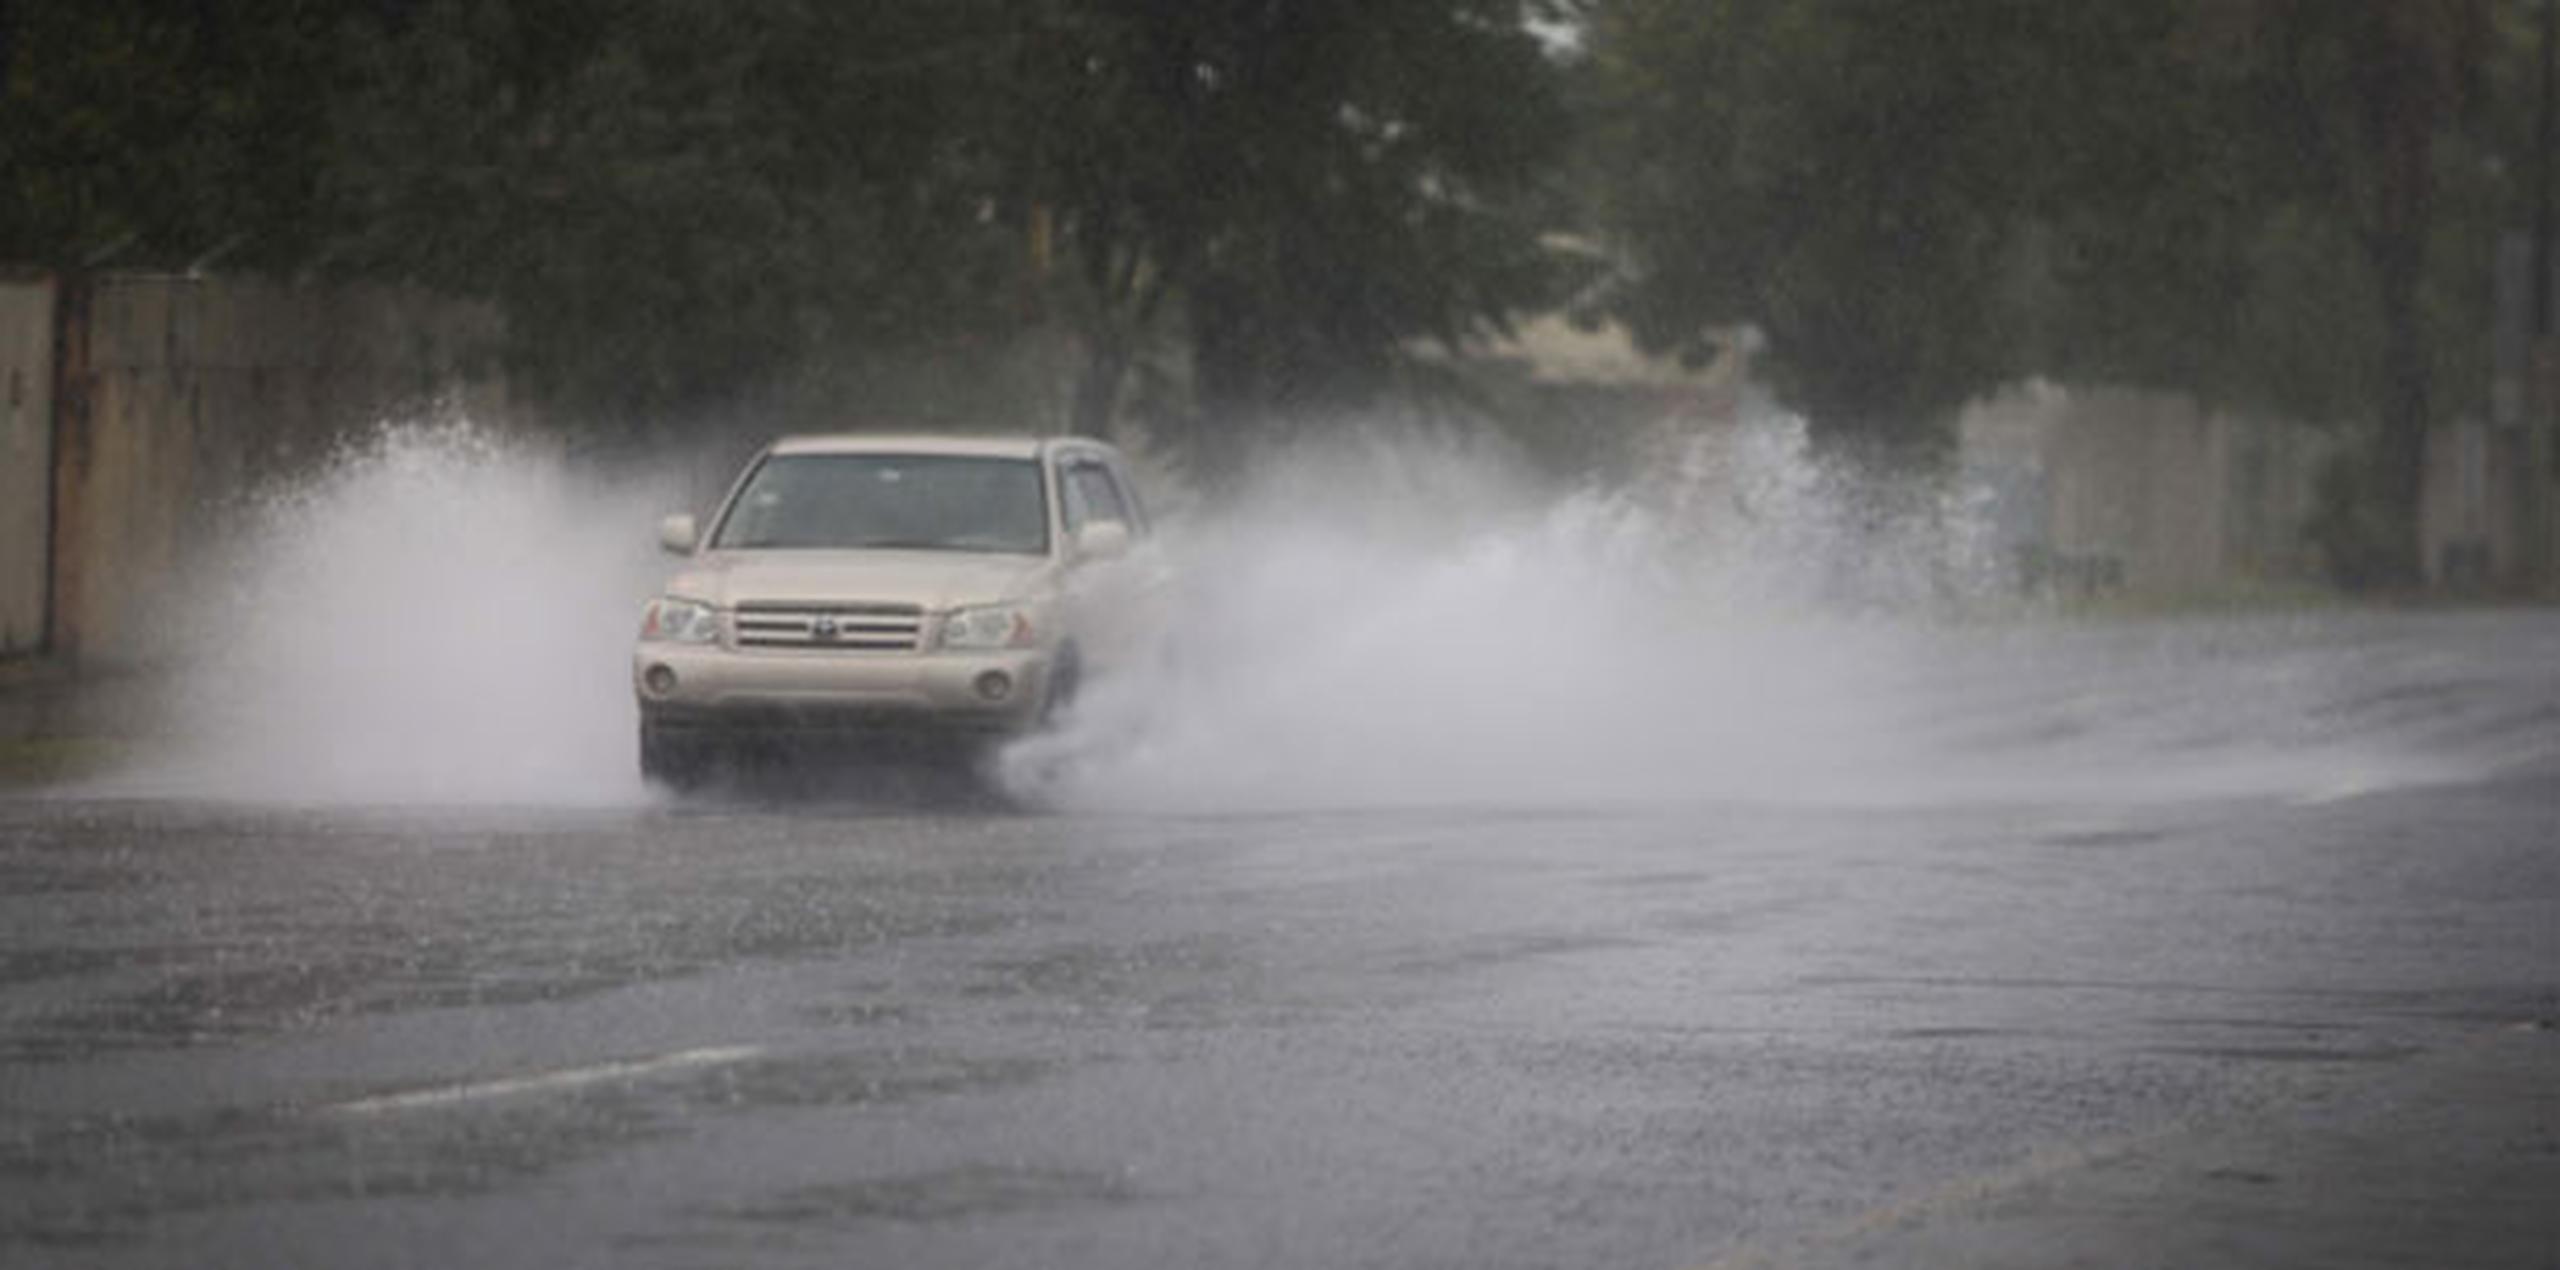 La Oficina de Prensa del área de Fajardo informó que la carretera PR-987 en el barrio Sabana de Luquillo no hay paso debido a que se encuentra inundada. (Archivo)